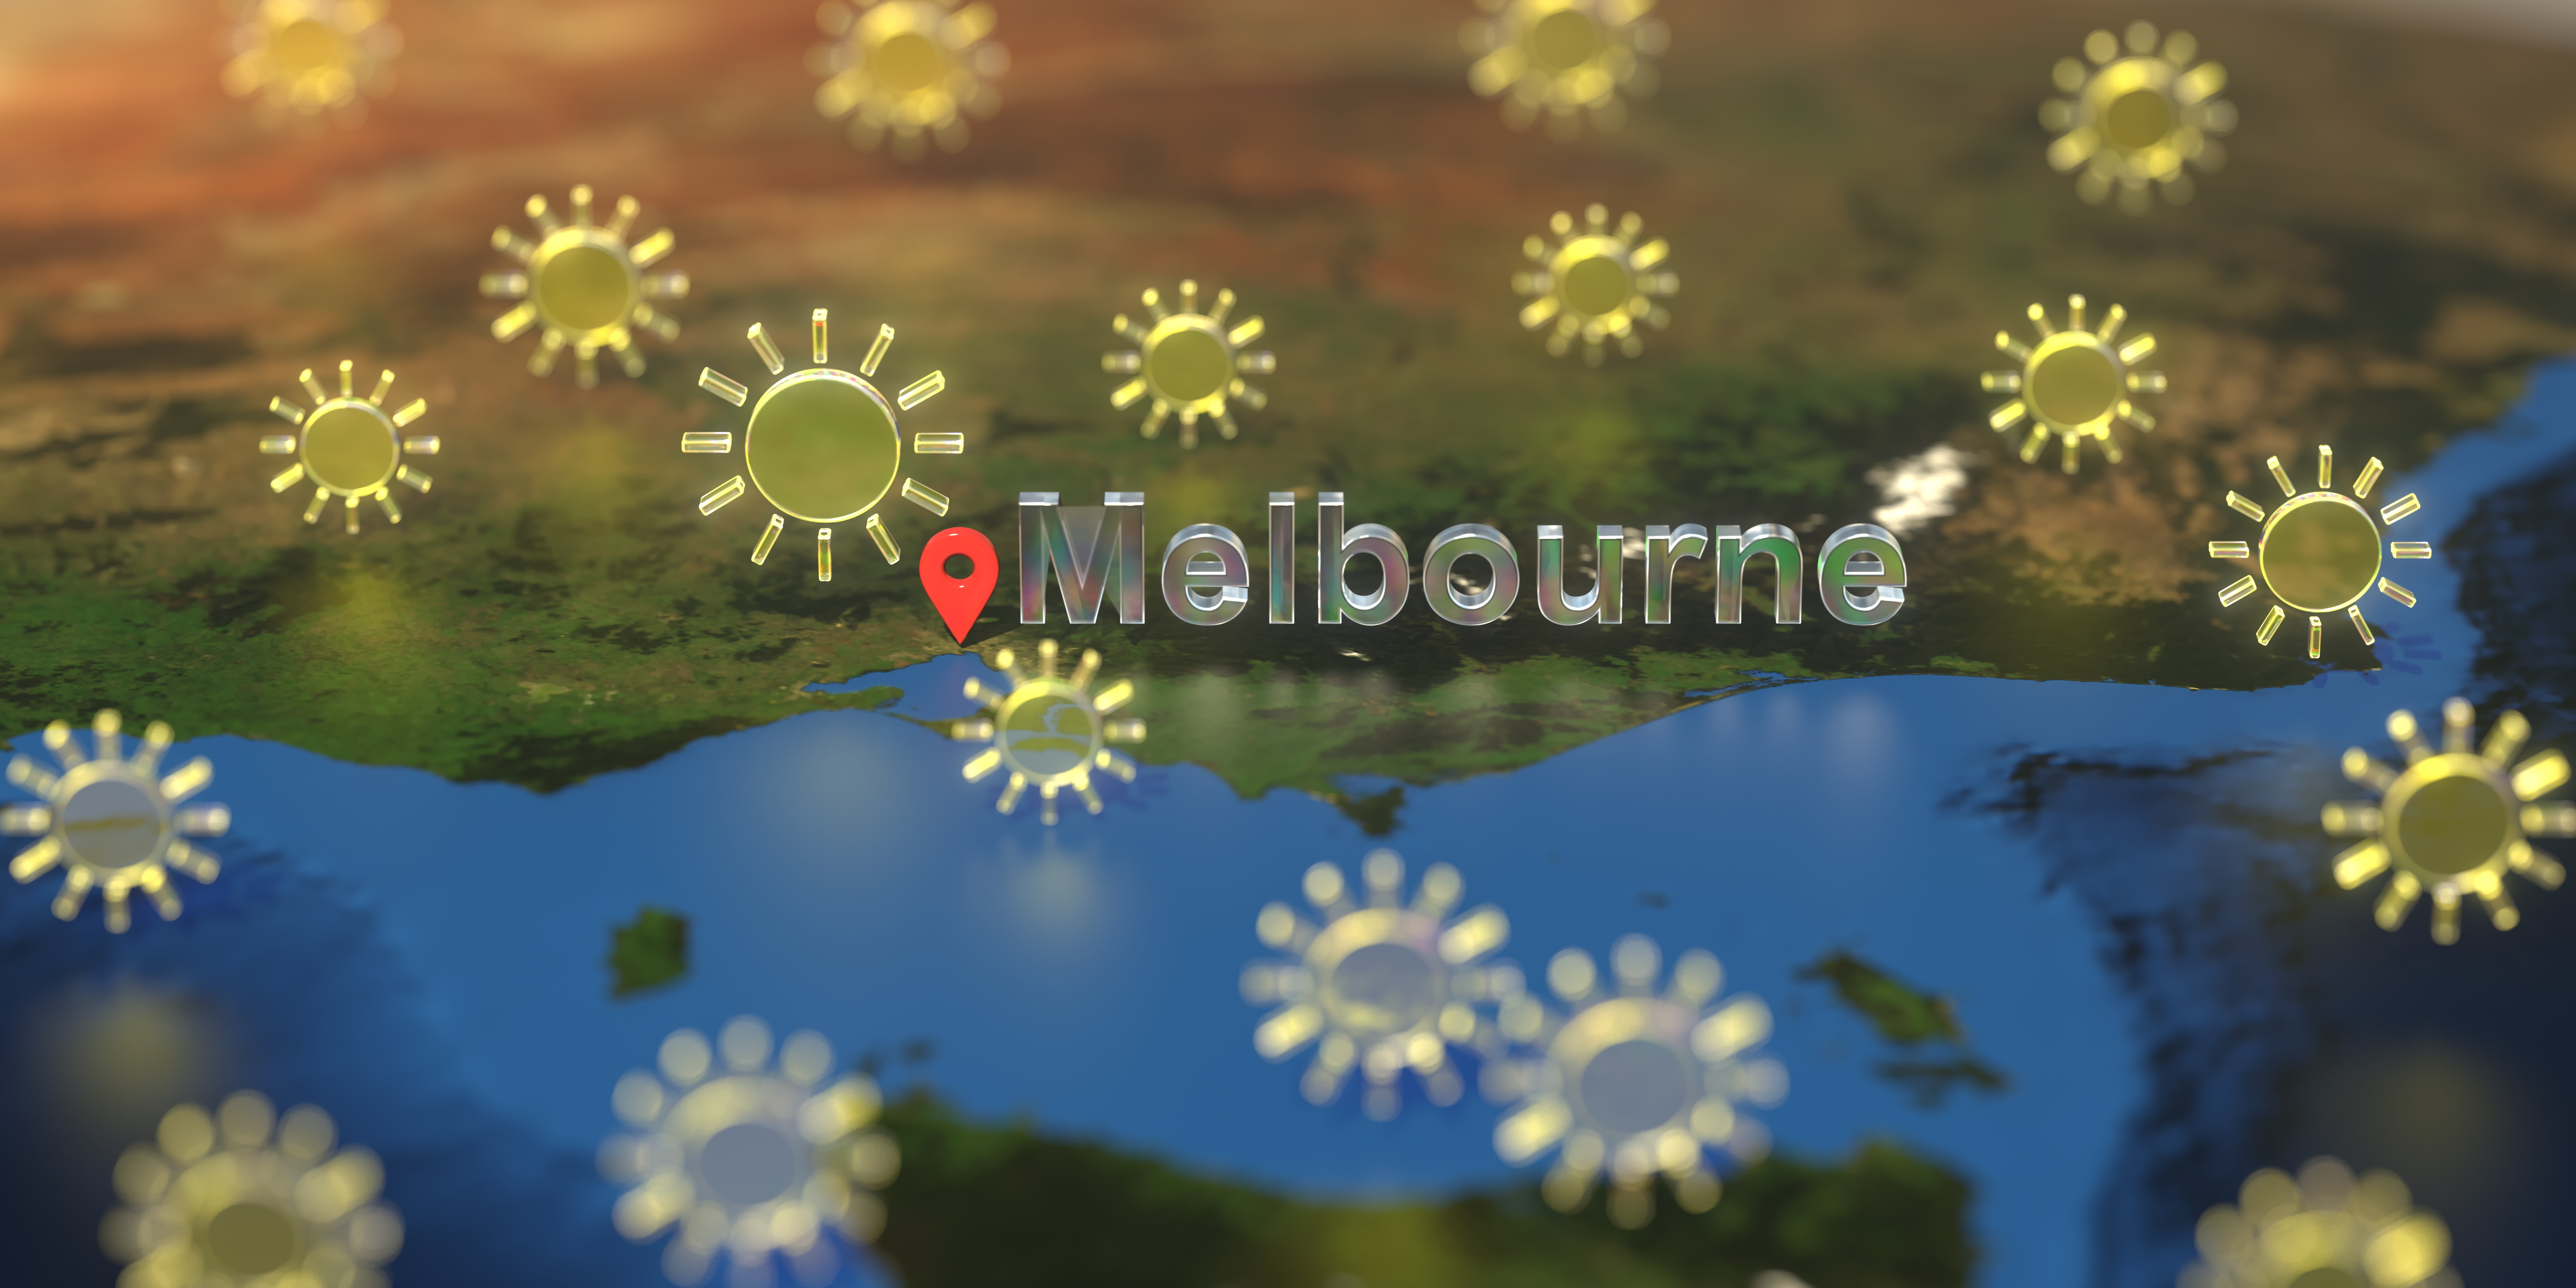 Icônes de temps ensoleillé près de la ville de Melbourne sur la carte, rendu 3D lié aux prévisions météorologiques © Alexey Novikov - stock.adobe.com